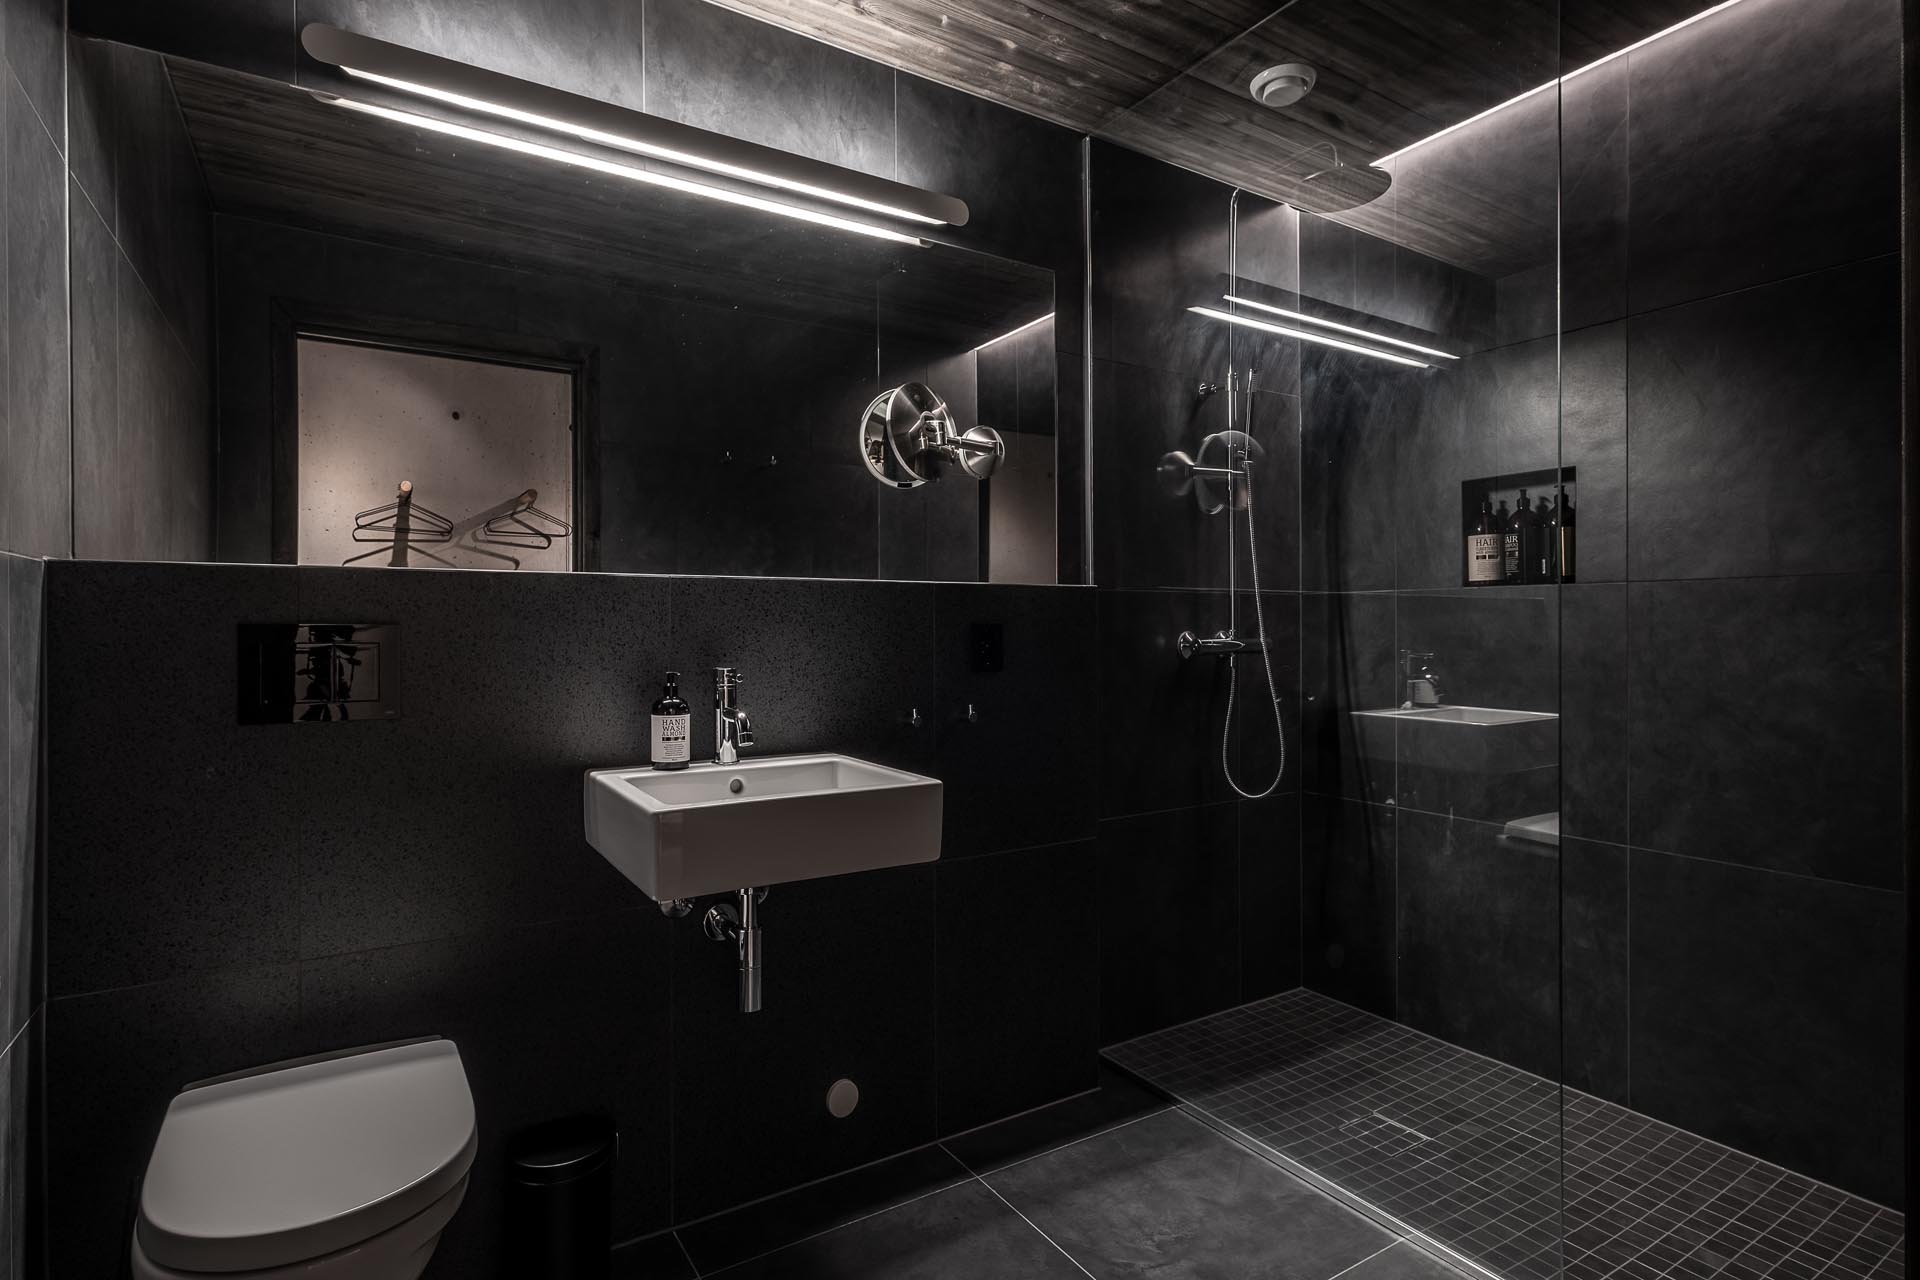 В этой темной ванной комнате широкоформатная черная плитка и освещение были использованы для создания драматического образа.